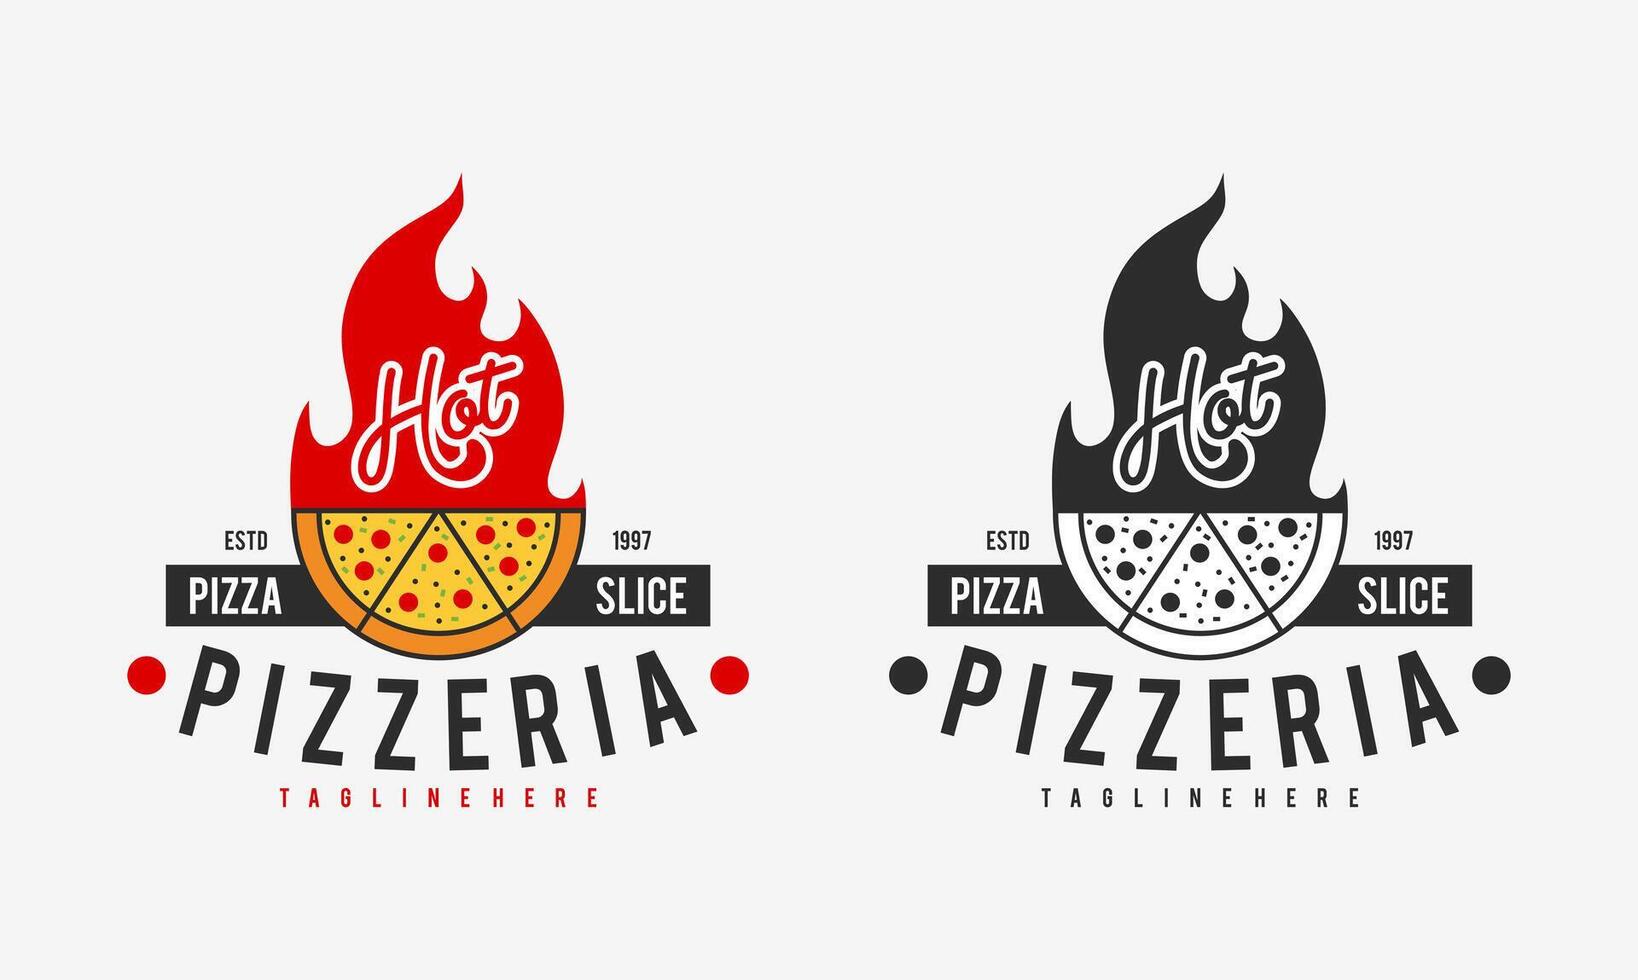 caldo pizzeria ristorante Vintage ▾ logo design. Pizza fetta simbolo per cibo bevanda e ristorante. vettore